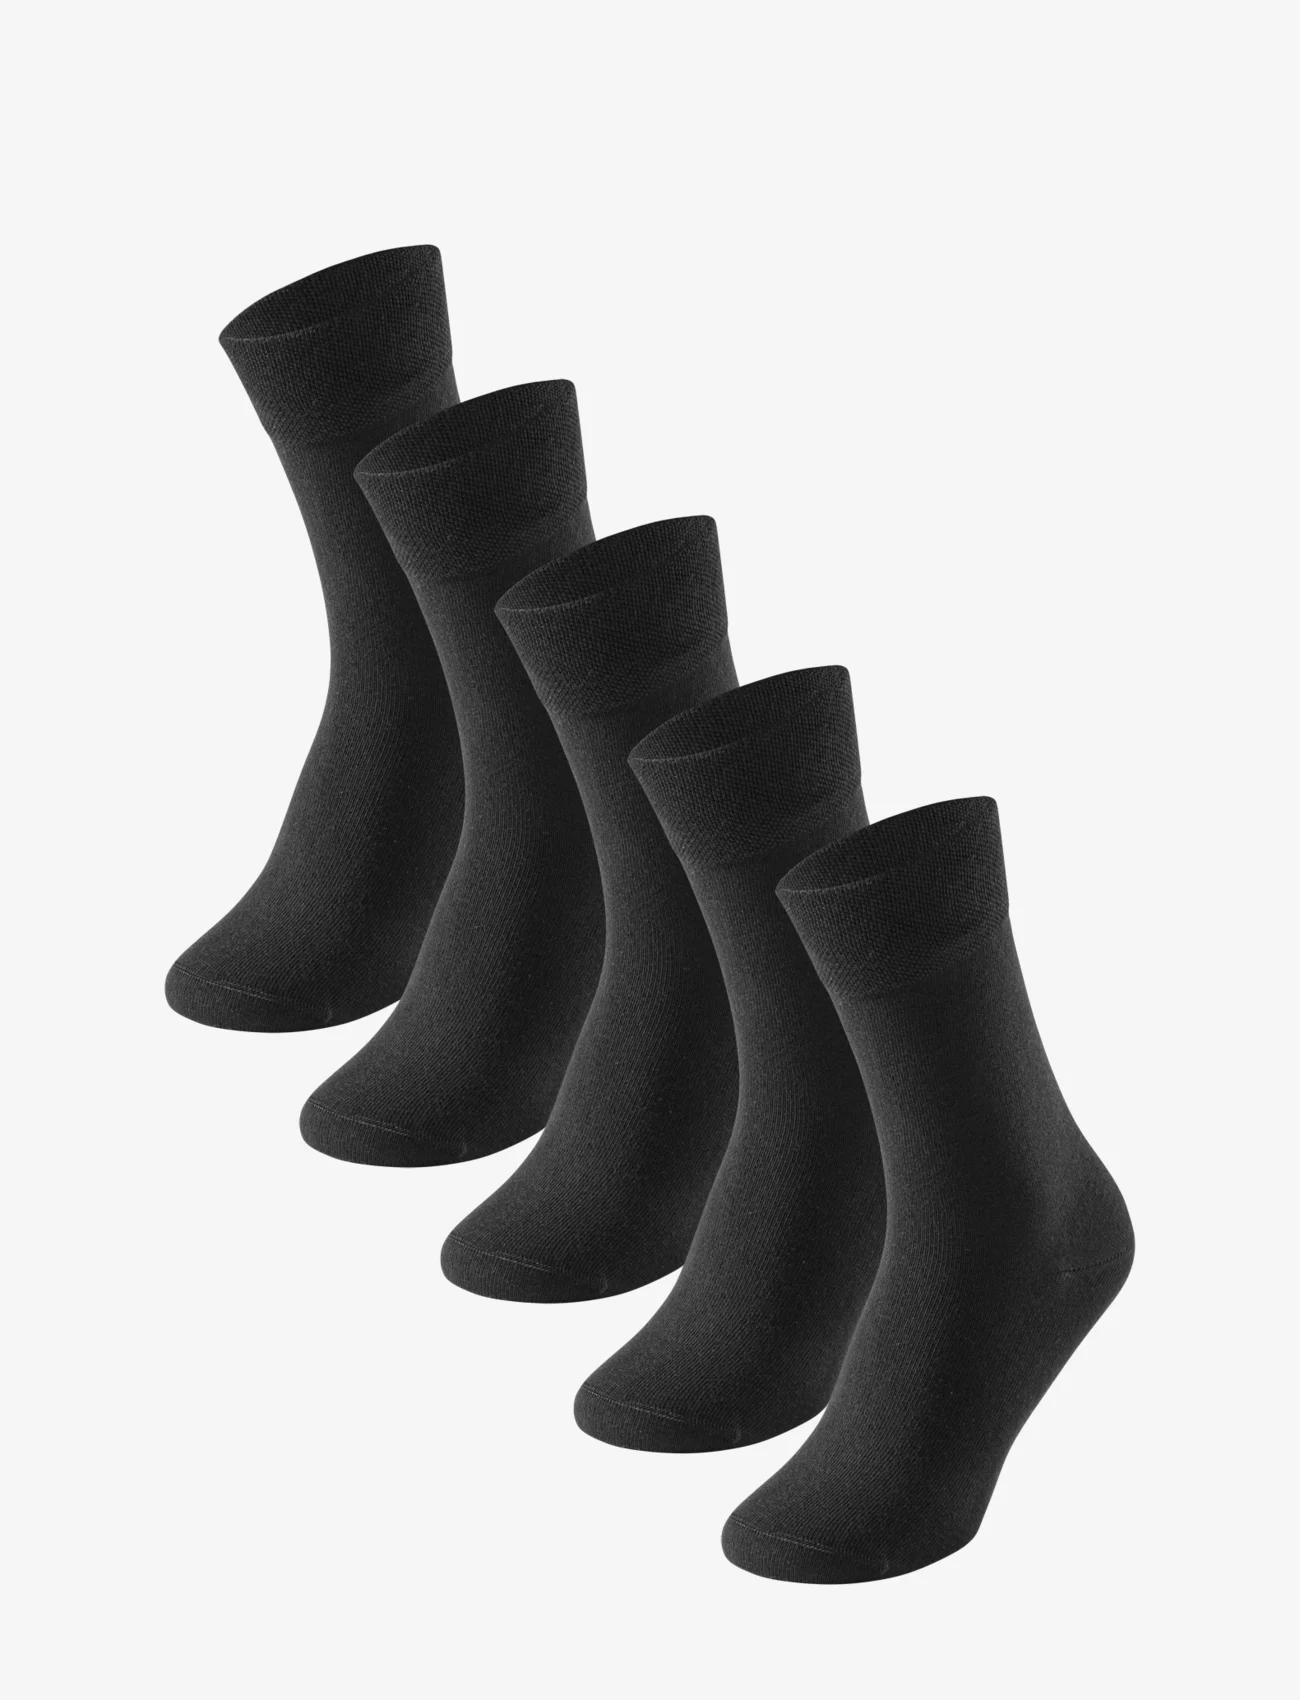 Schiesser - Socks - multipack socks - black - 0